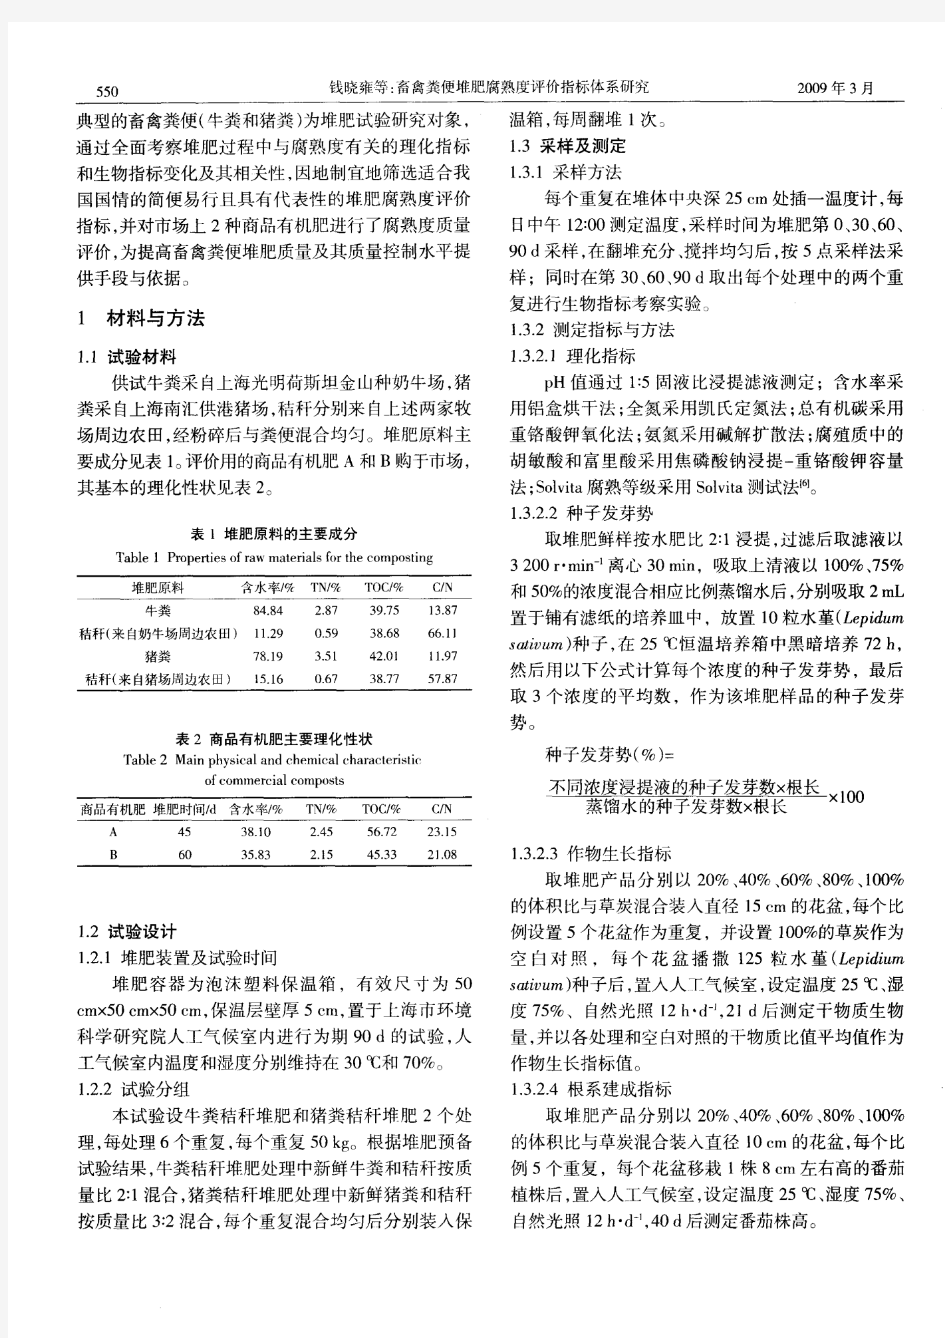 畜禽粪便堆肥腐熟度评价指标体系研究(2017.01.15)